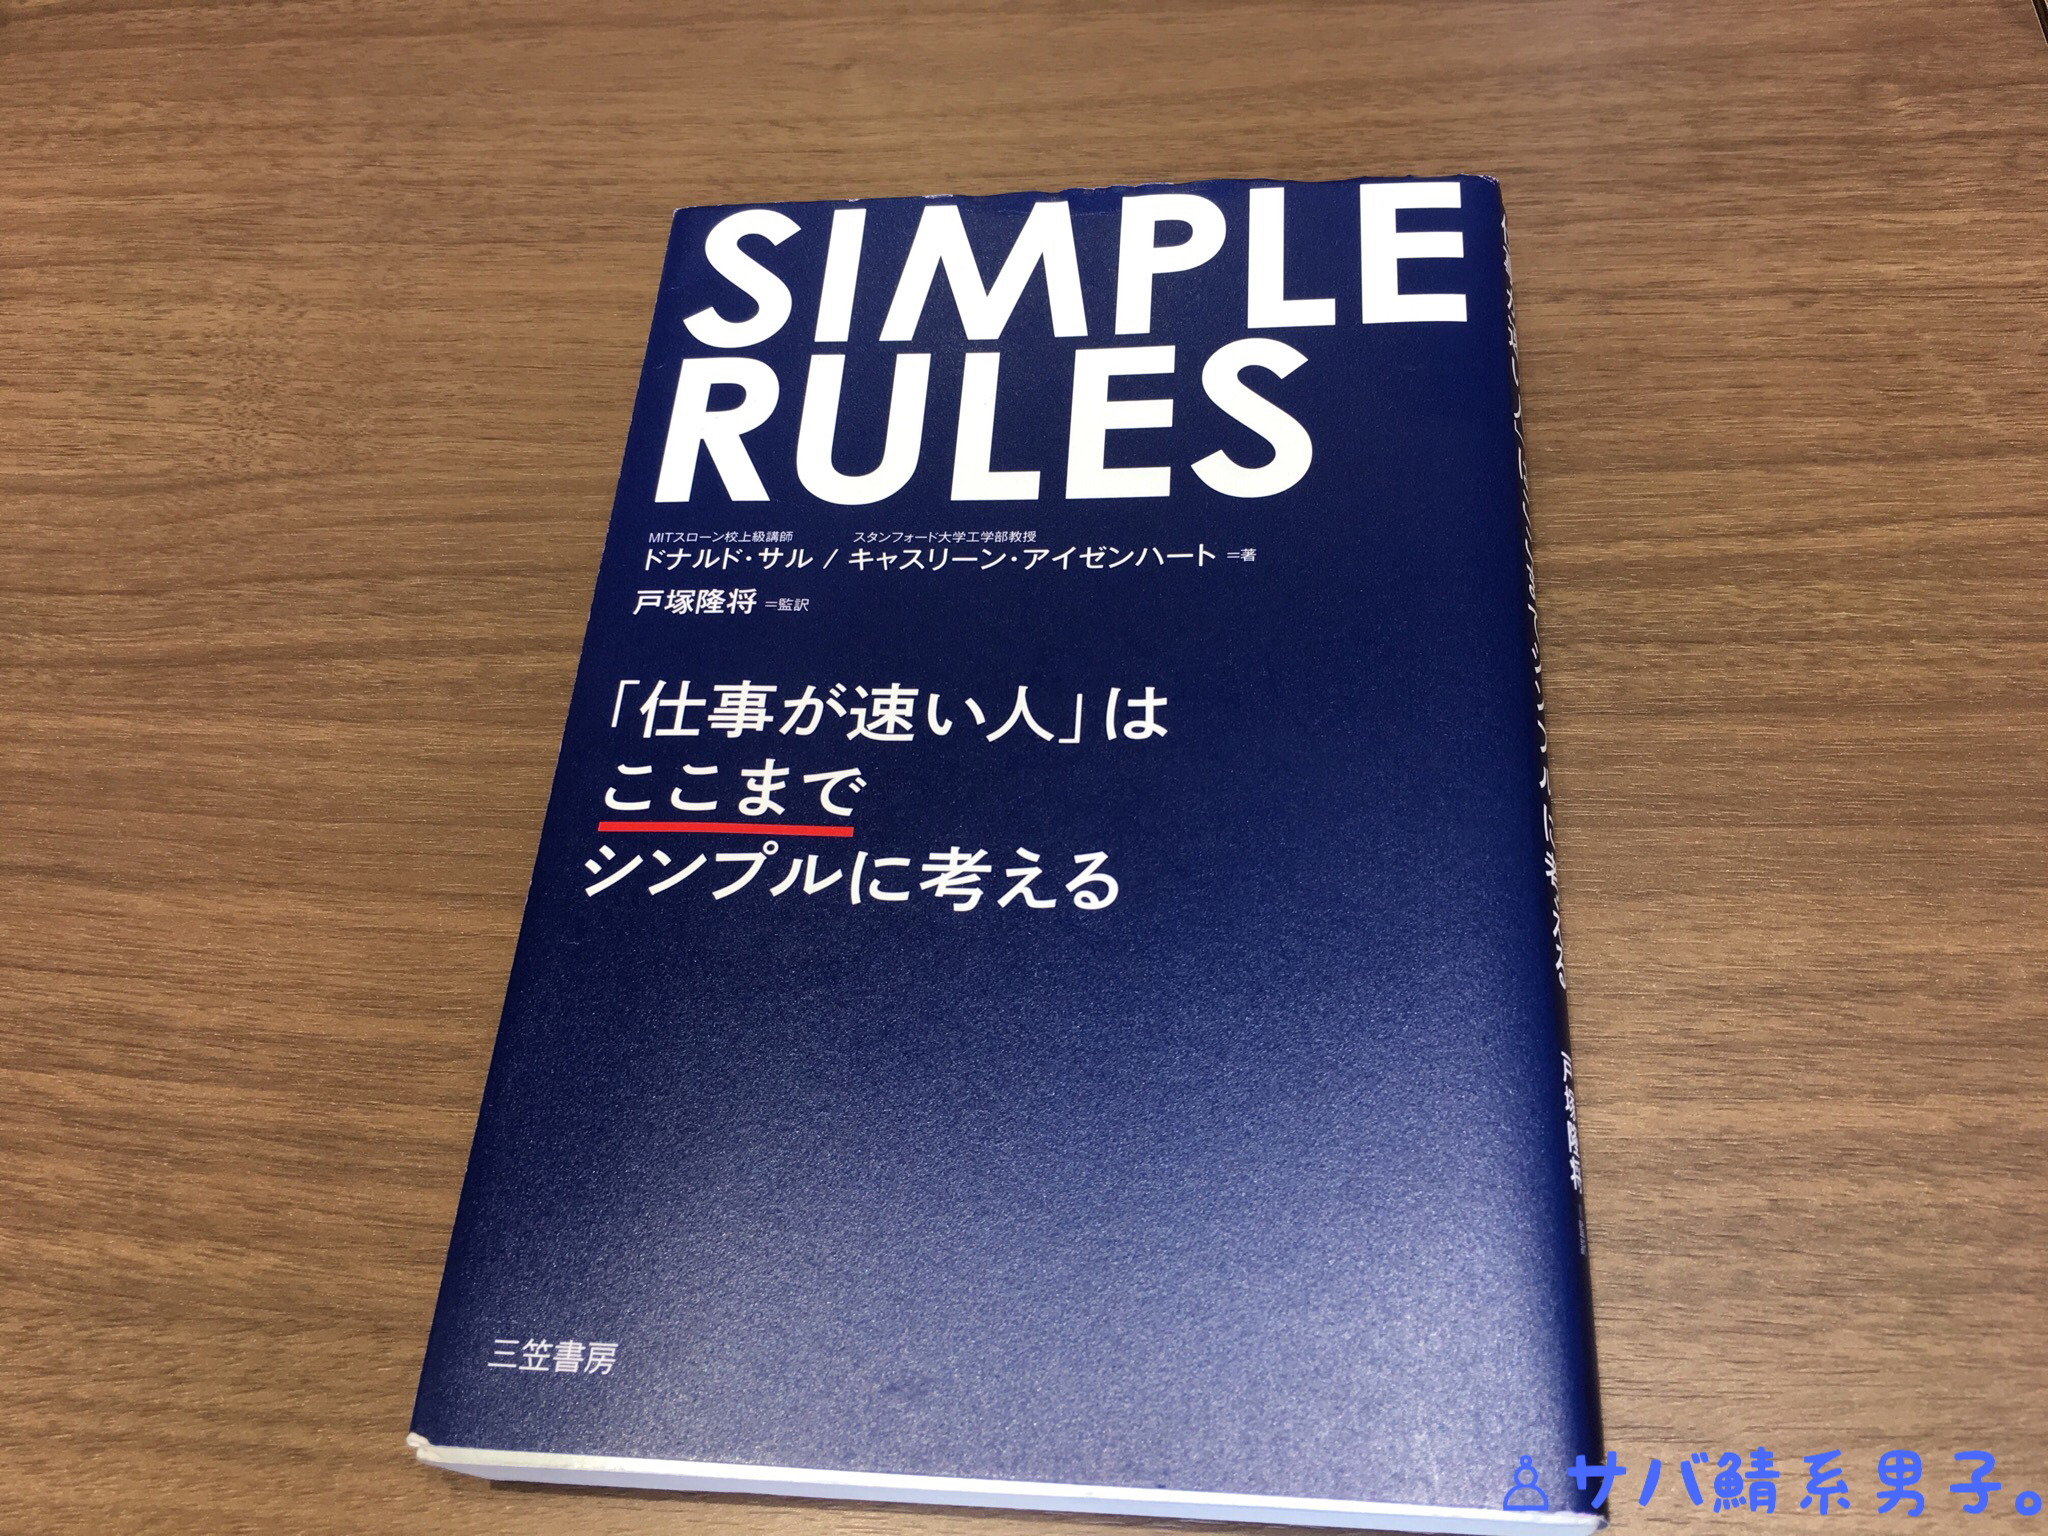 『SIMPLE RULES 「仕事が速い人」はここまでシンプルに考える』